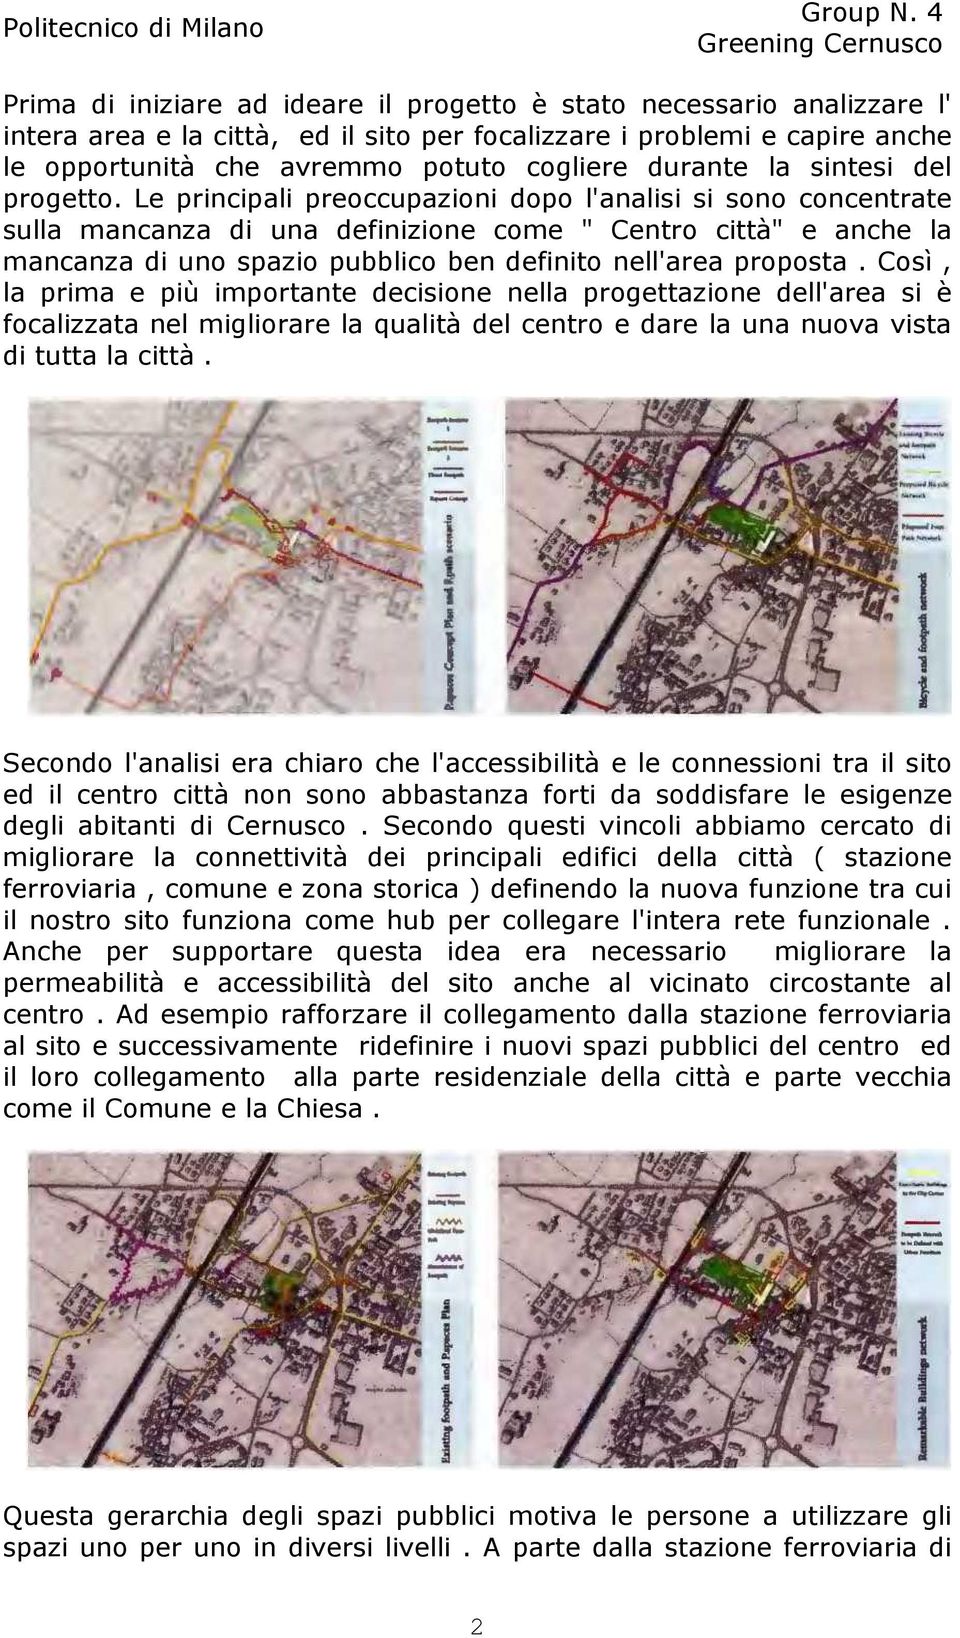 Le principali preoccupazioni dopo l'analisi si sono concentrate sulla mancanza di una definizione come " Centro città" e anche la mancanza di uno spazio pubblico ben definito nell'area proposta.